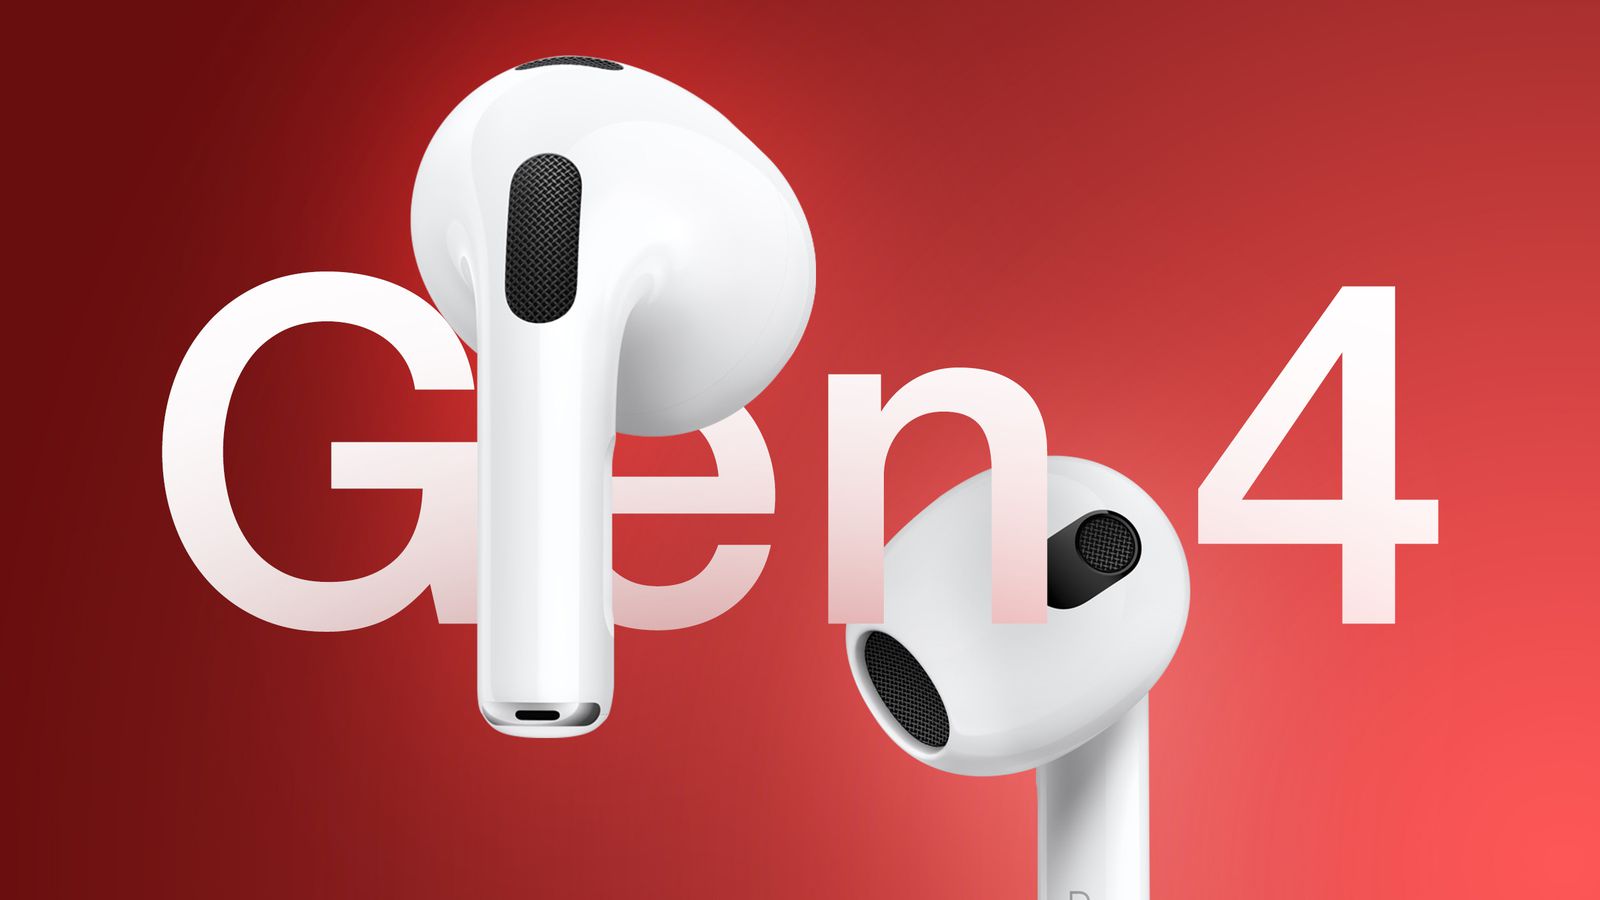 Dari iPhoneIslam.com, dua earbud nirkabel berlabel “AirPods 4” mengapung dengan latar belakang merah, menampilkan desain serta penempatan komponen mikrofon dan speaker.